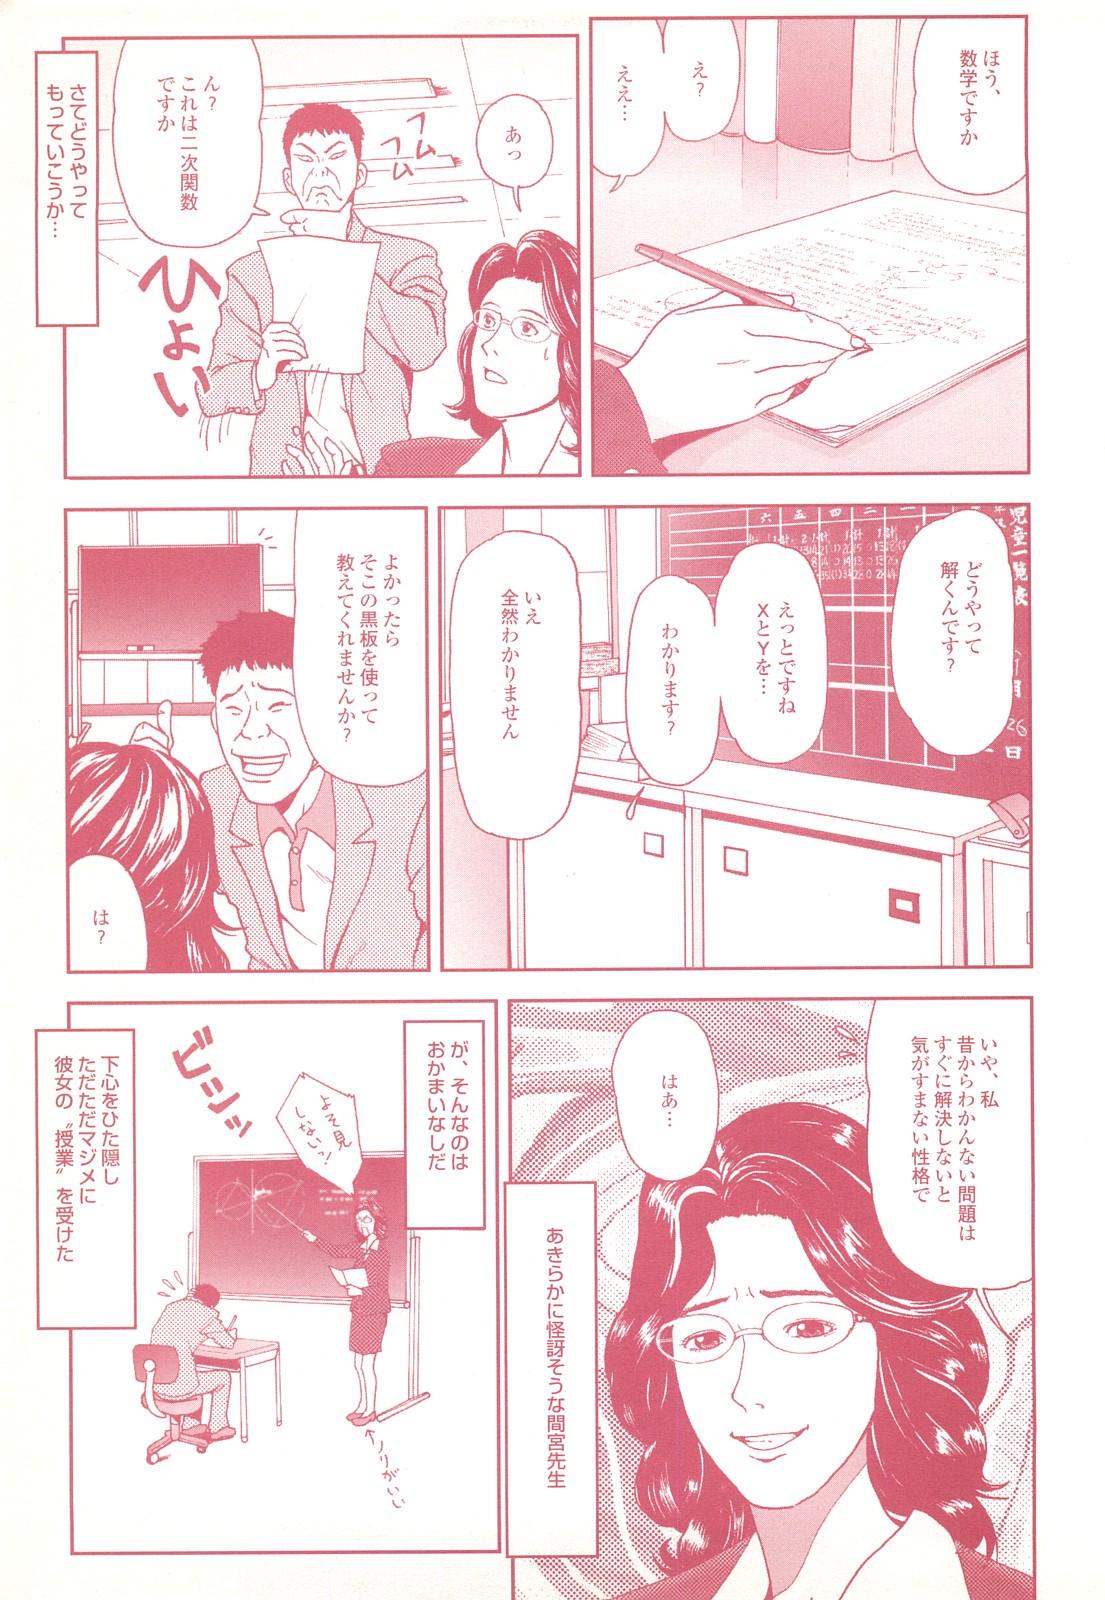 コミック裏モノJAPAN Vol.18 今井のりたつスペシャル号 120